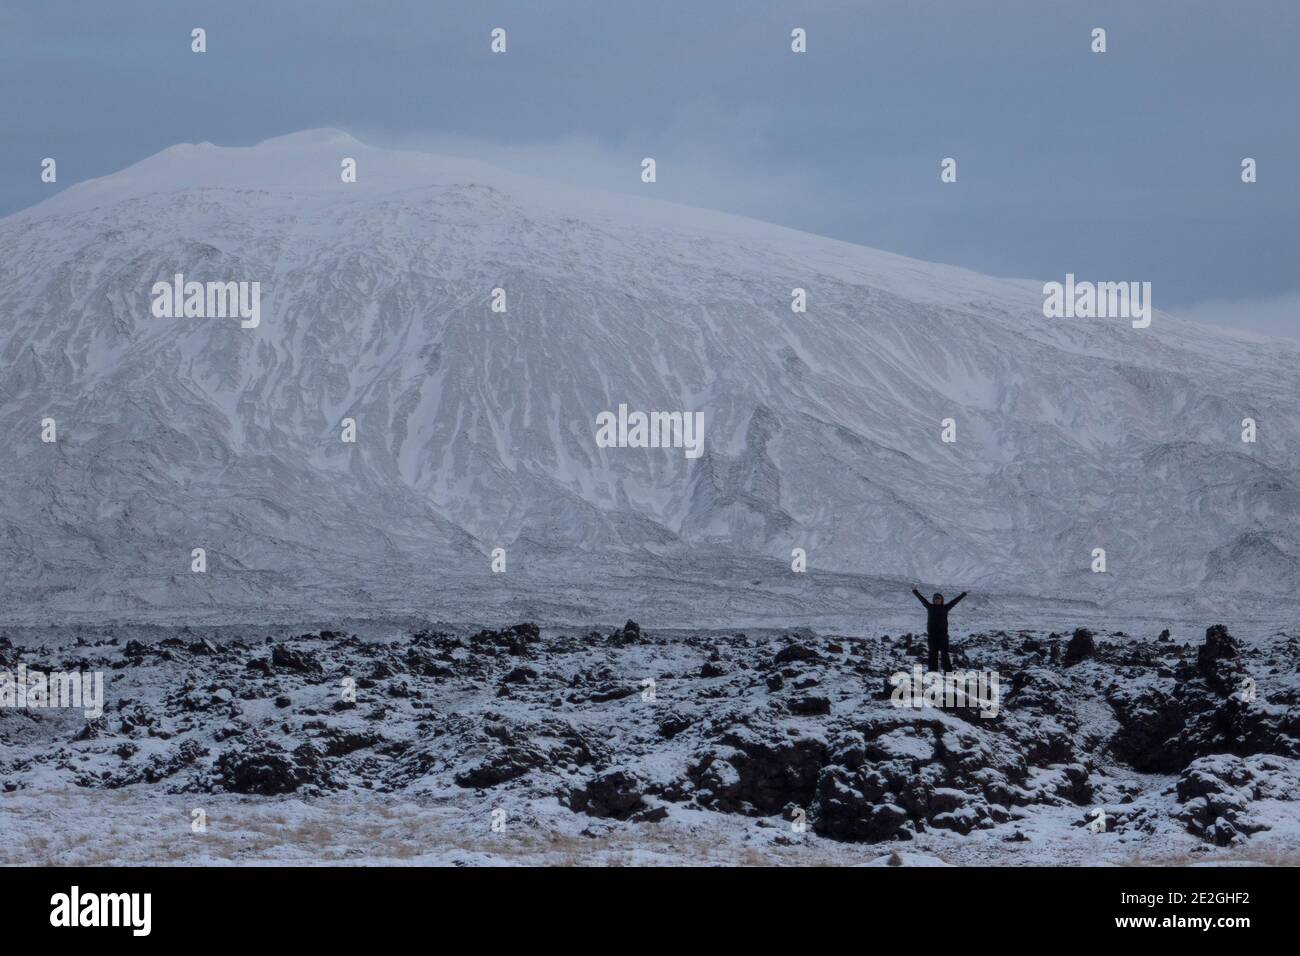 Exuberant woman in remote snowy mountain landscape, Sn fellsj kull, Iceland Stock Photo